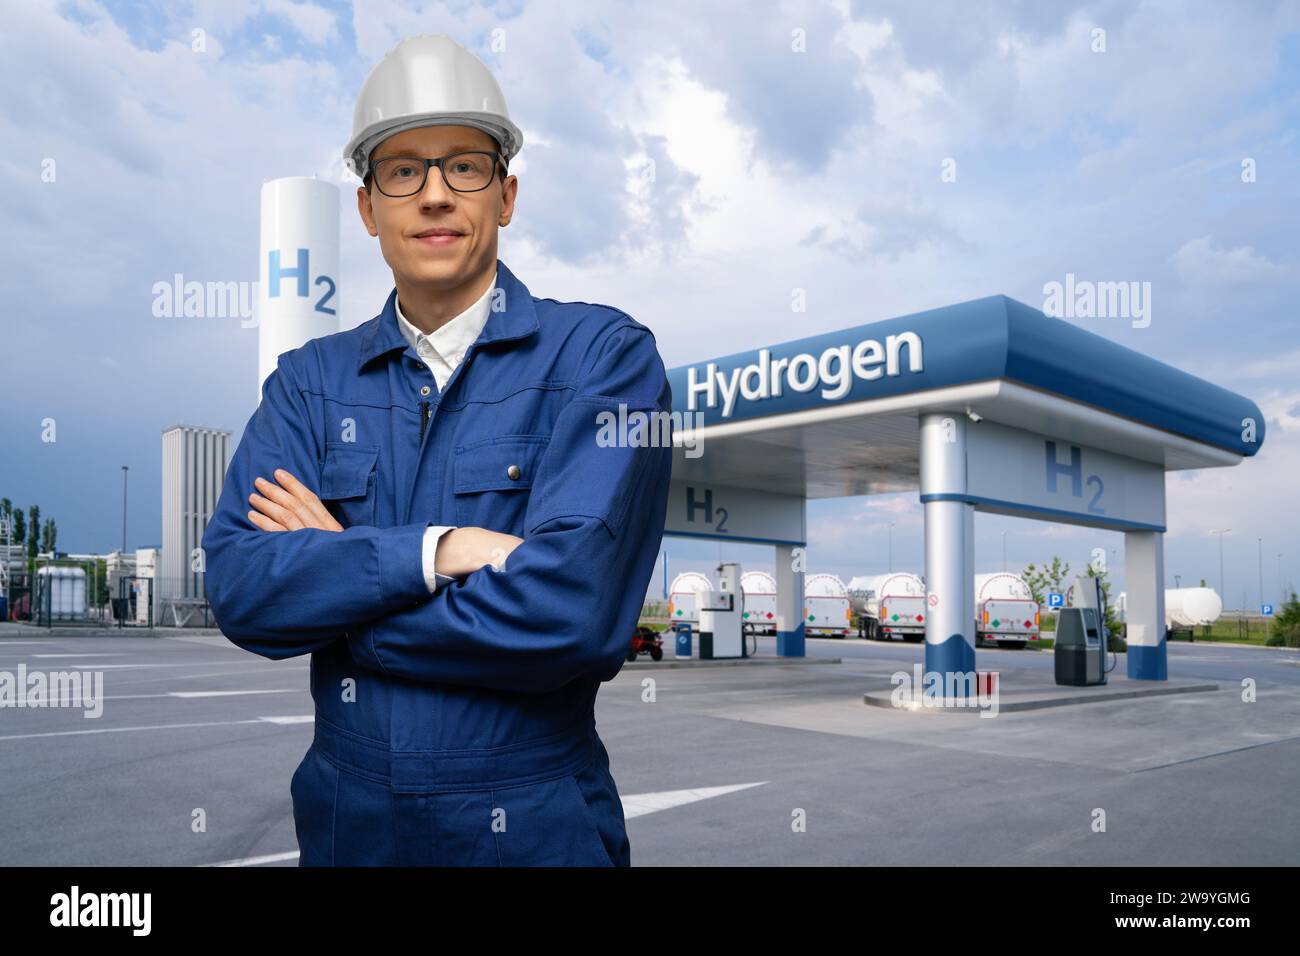 Ingénieur dans un casque et costume bleu sur un fond de station de remplissage d'hydrogène utilisant l'énergie renouvelable. Concept... Banque D'Images